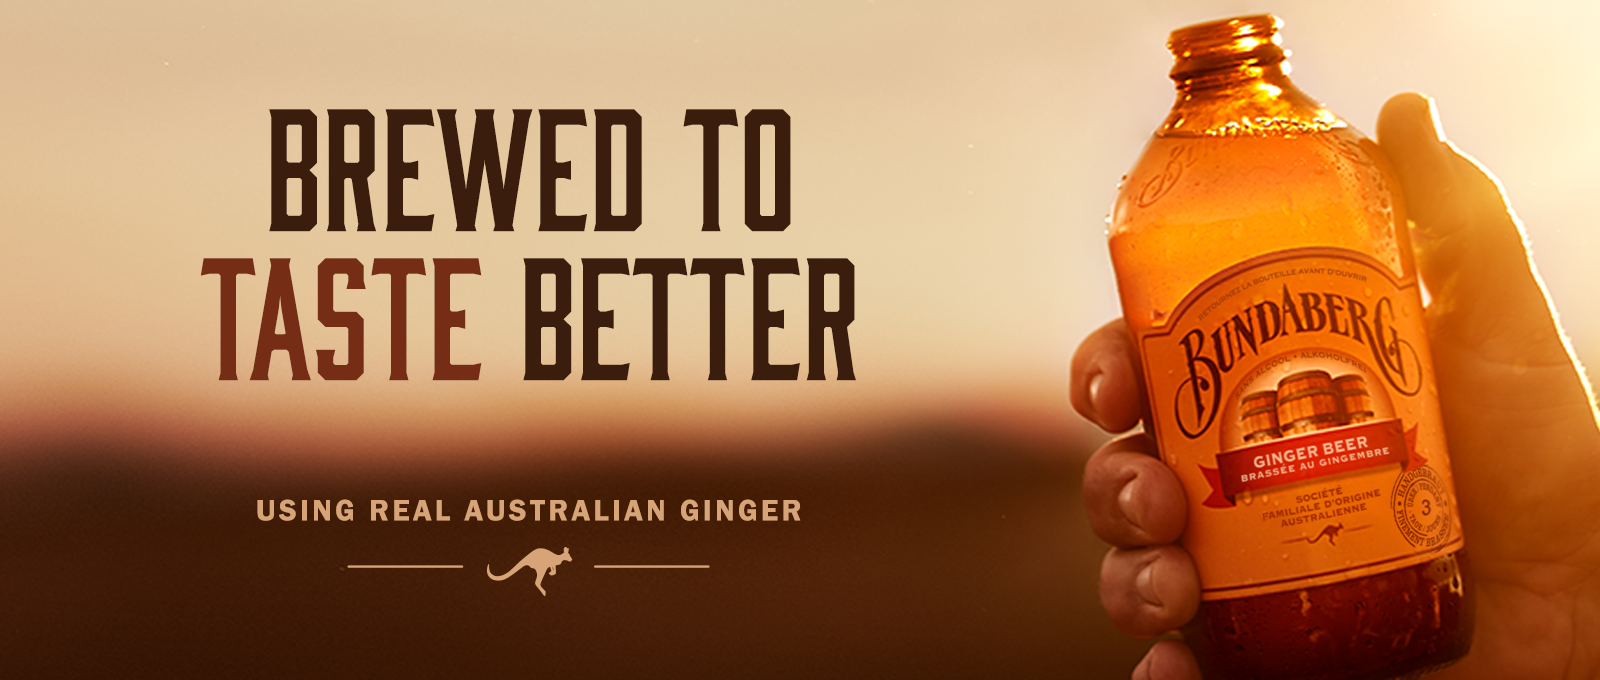 Bundaberg Ginger Beer - Brewed to taste better France